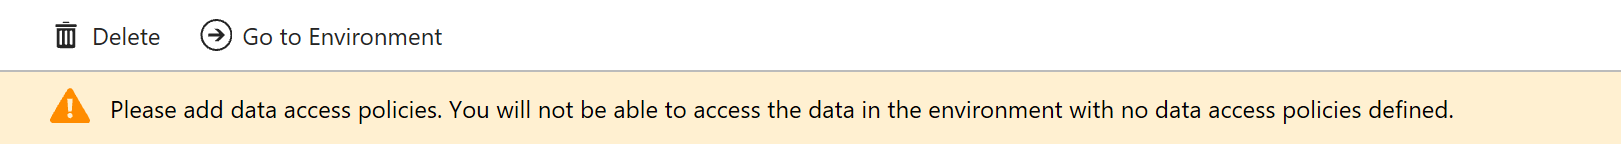 Data Access Policy Error